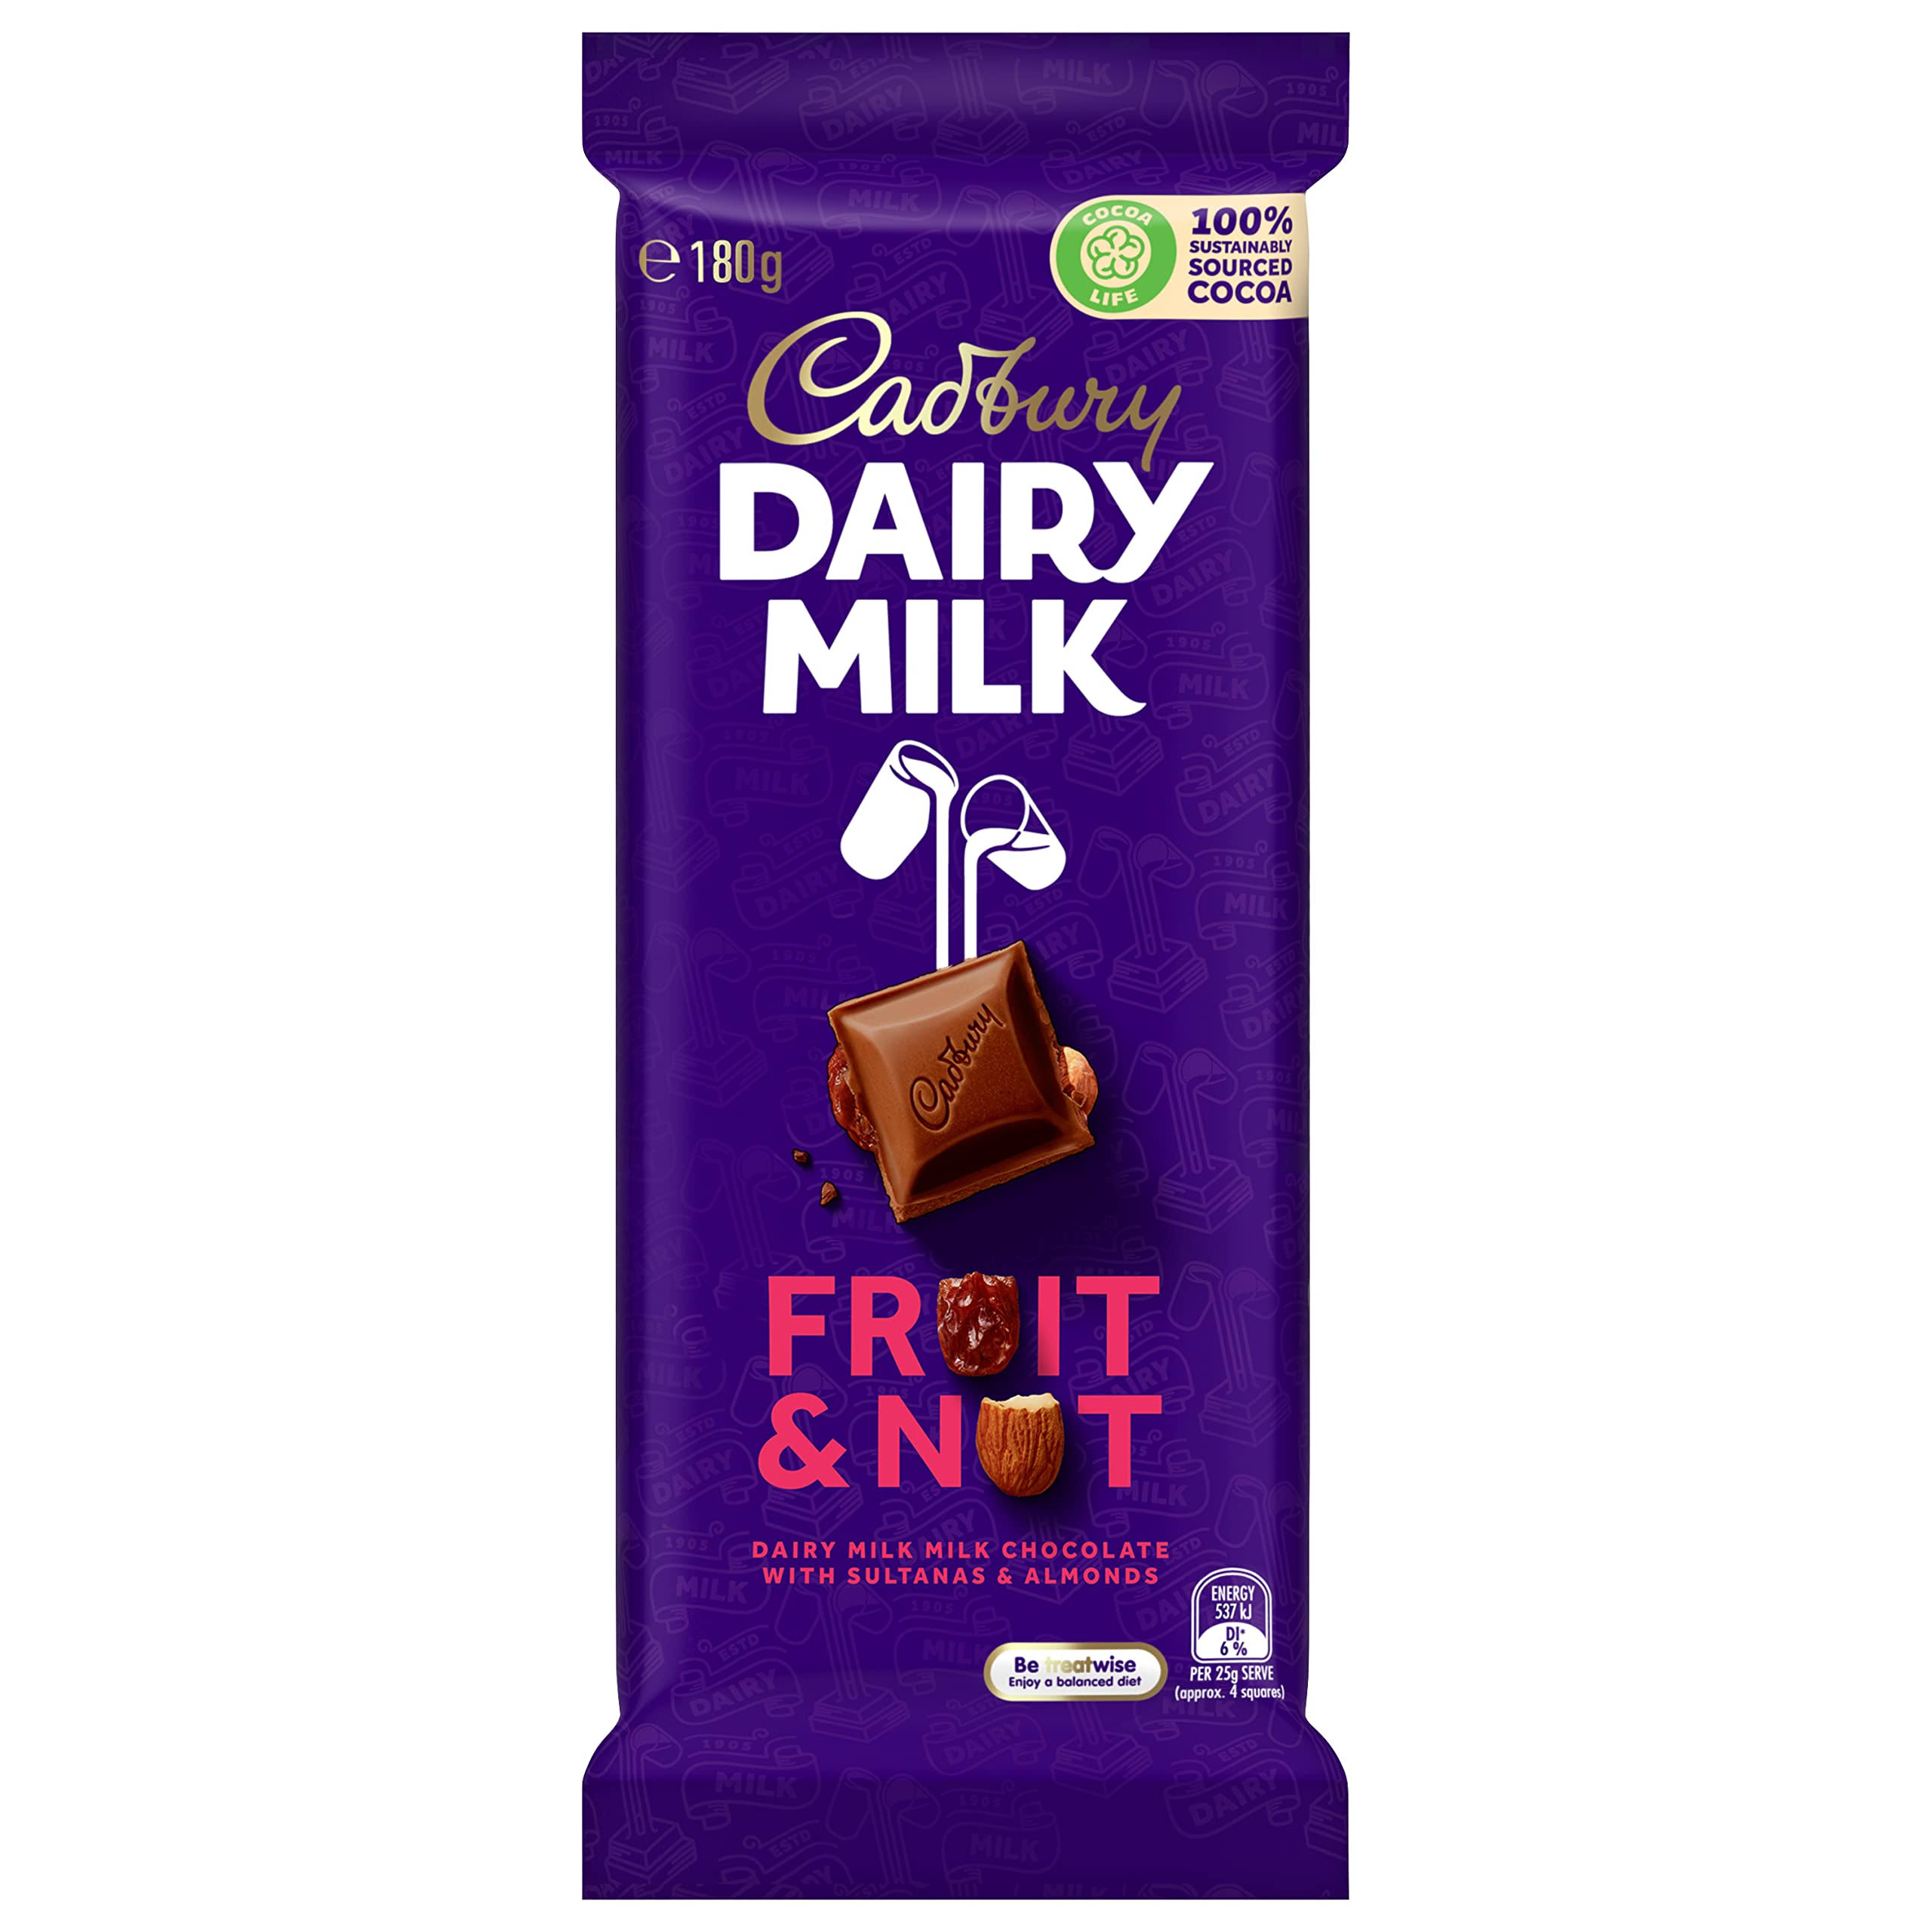 Cadbury Dairy Milk Fruit & Nut (180g)